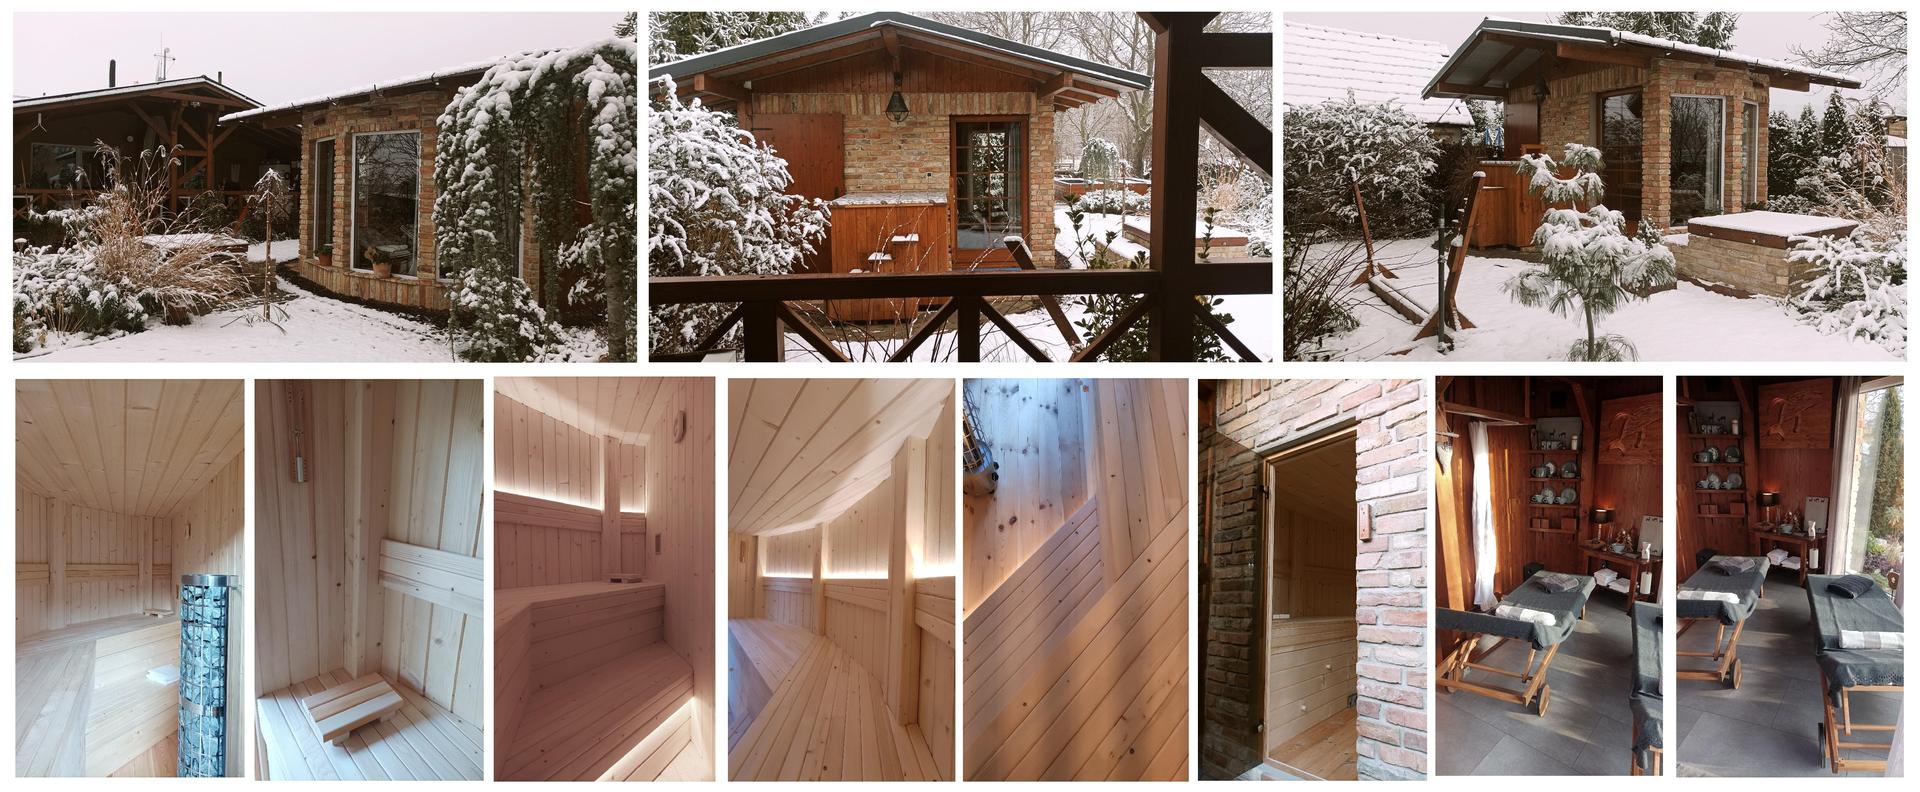 Relaxačný domček sauna a oddychová miestnosť
... plány, príprava a realizácia
